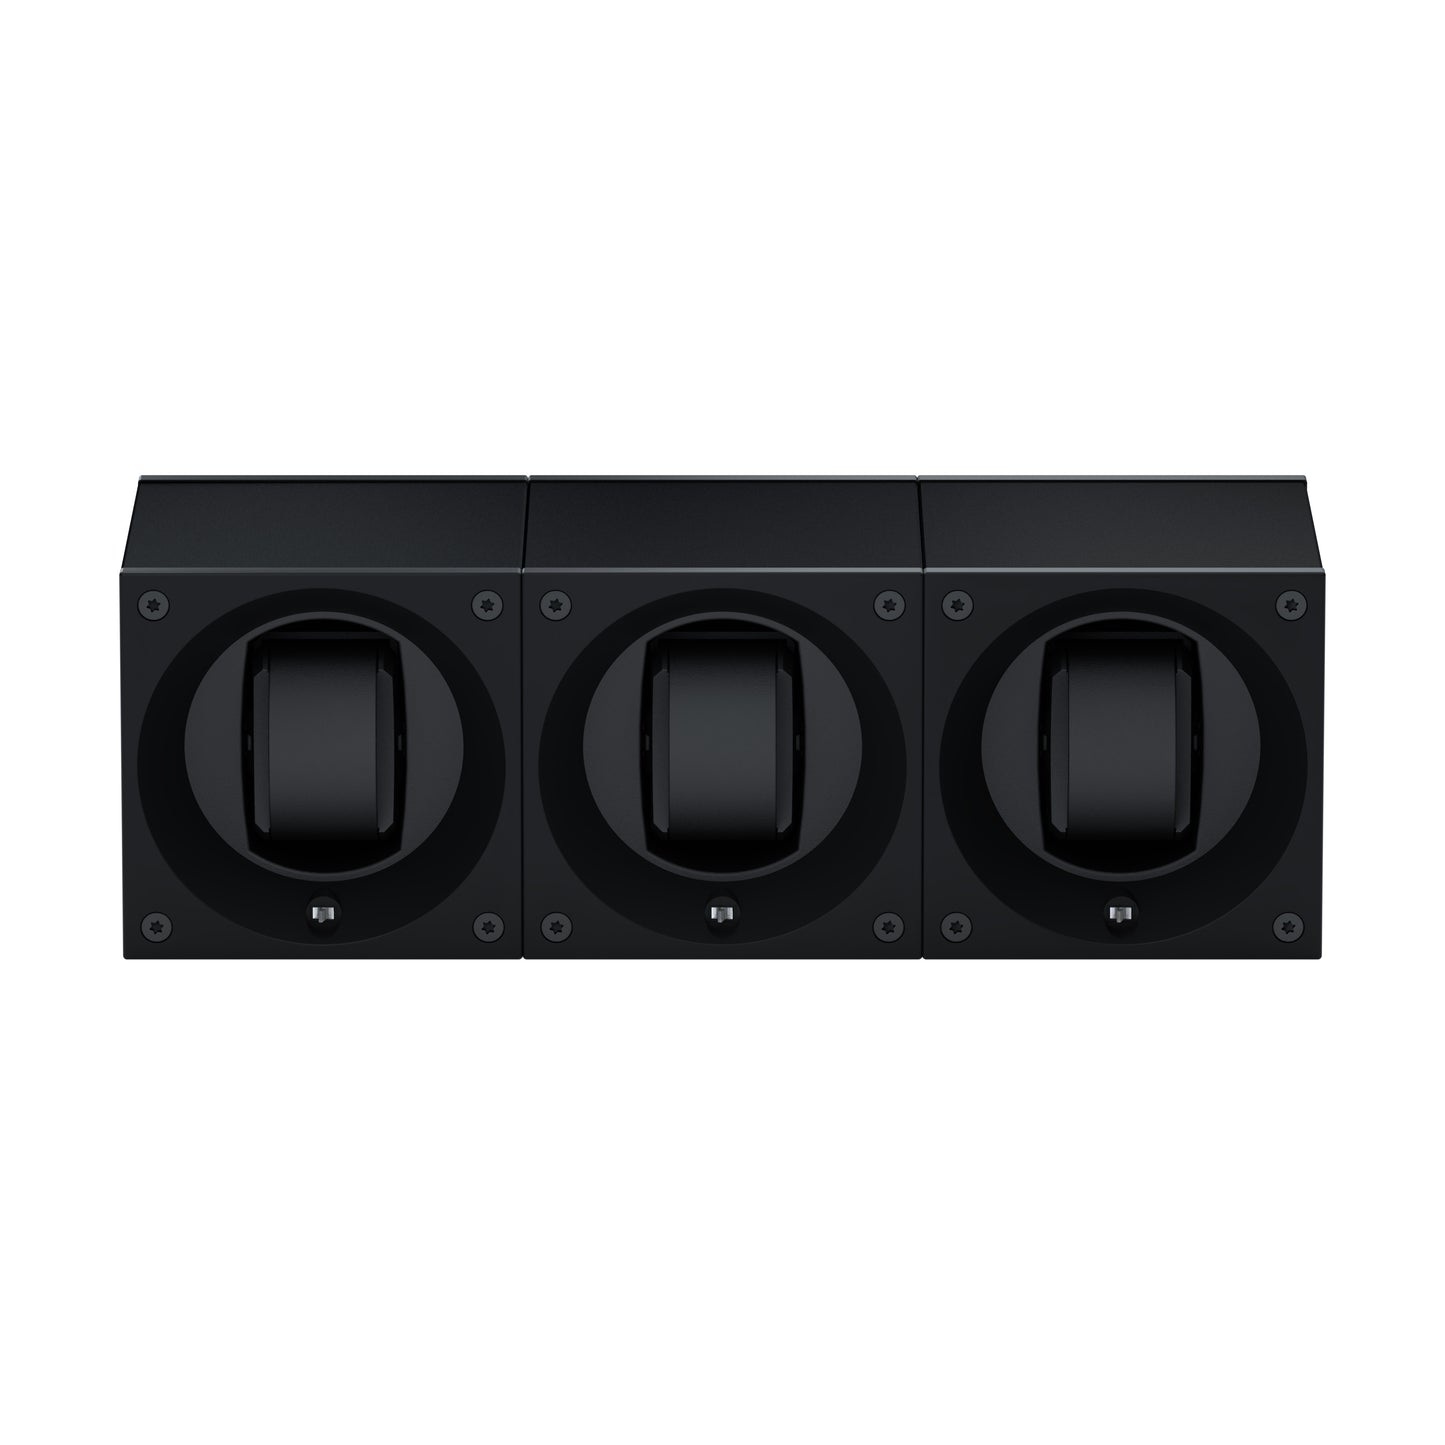 Masterbox 3 montres Aluminium Noir : écrin rotatif pour montre automatique